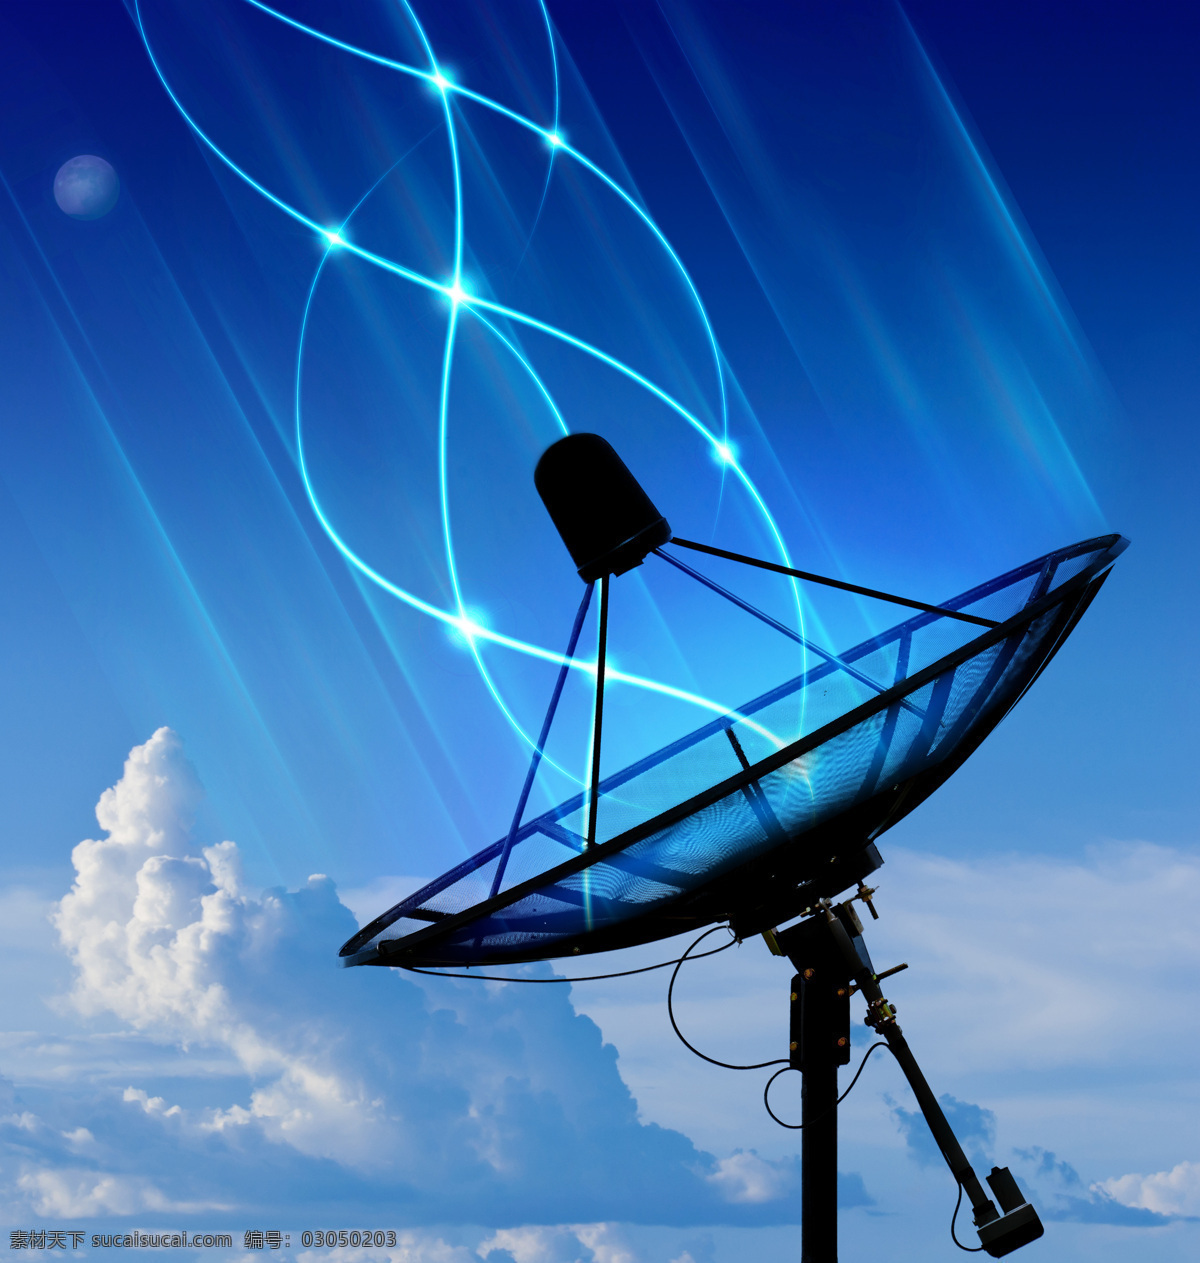 雷达 接收器 设备 高清 科技 未来 蓝天 风景 天空 白云 卫星天线 卫星接收器 美丽风景 美丽景色 宇宙 太空 现代科技 蓝色